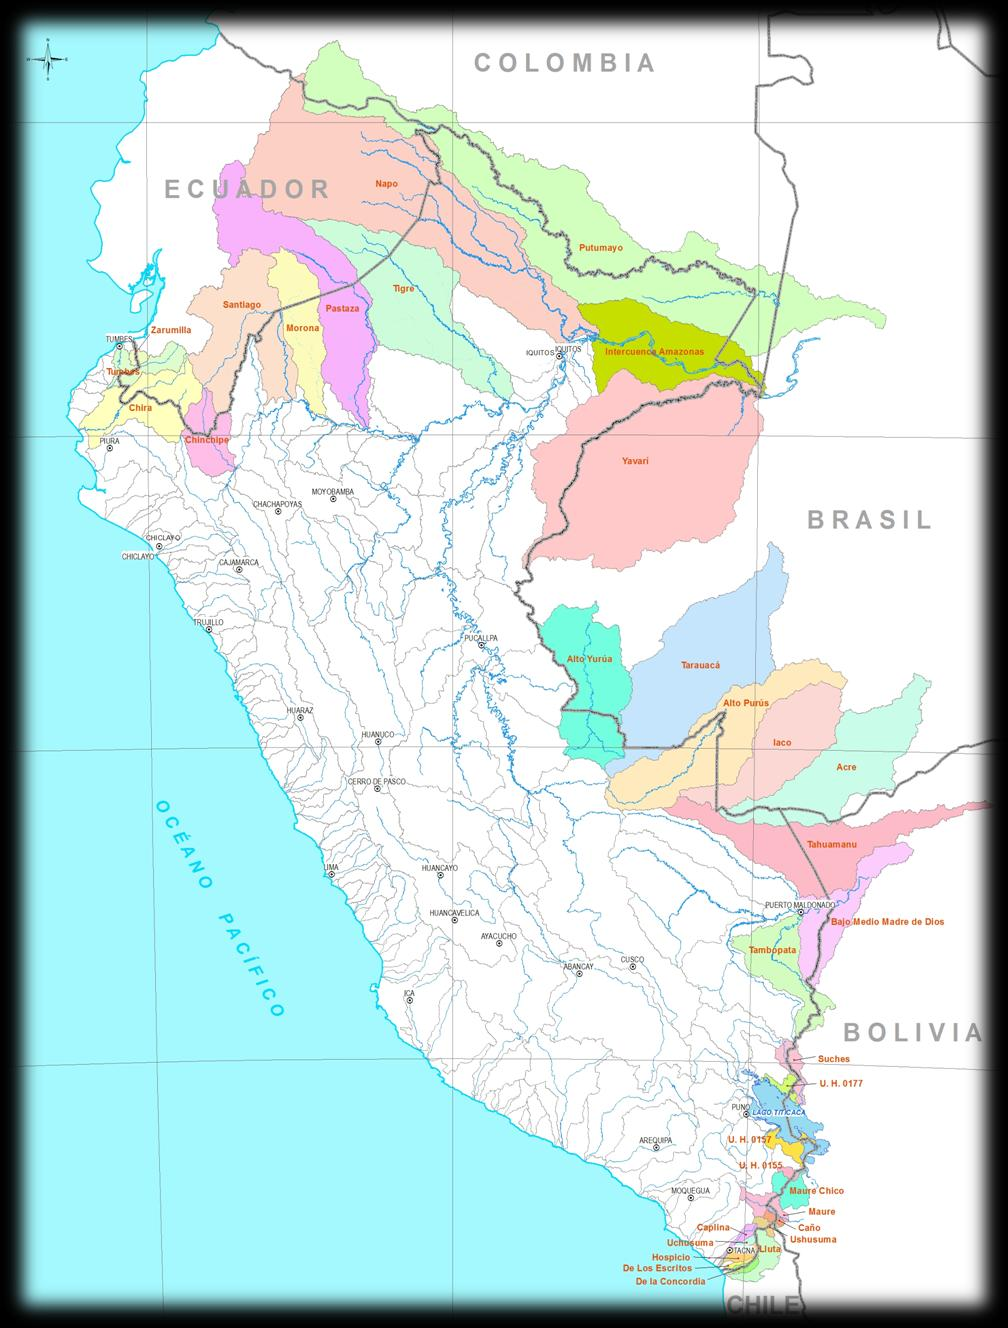 Cuencas Transfronterizas del Perú El Perú posee 34 cuencas transfronterizas con 5 países limítrofes: Ecuador; Colombia; Brasil; Bolivia; y, Chile, están